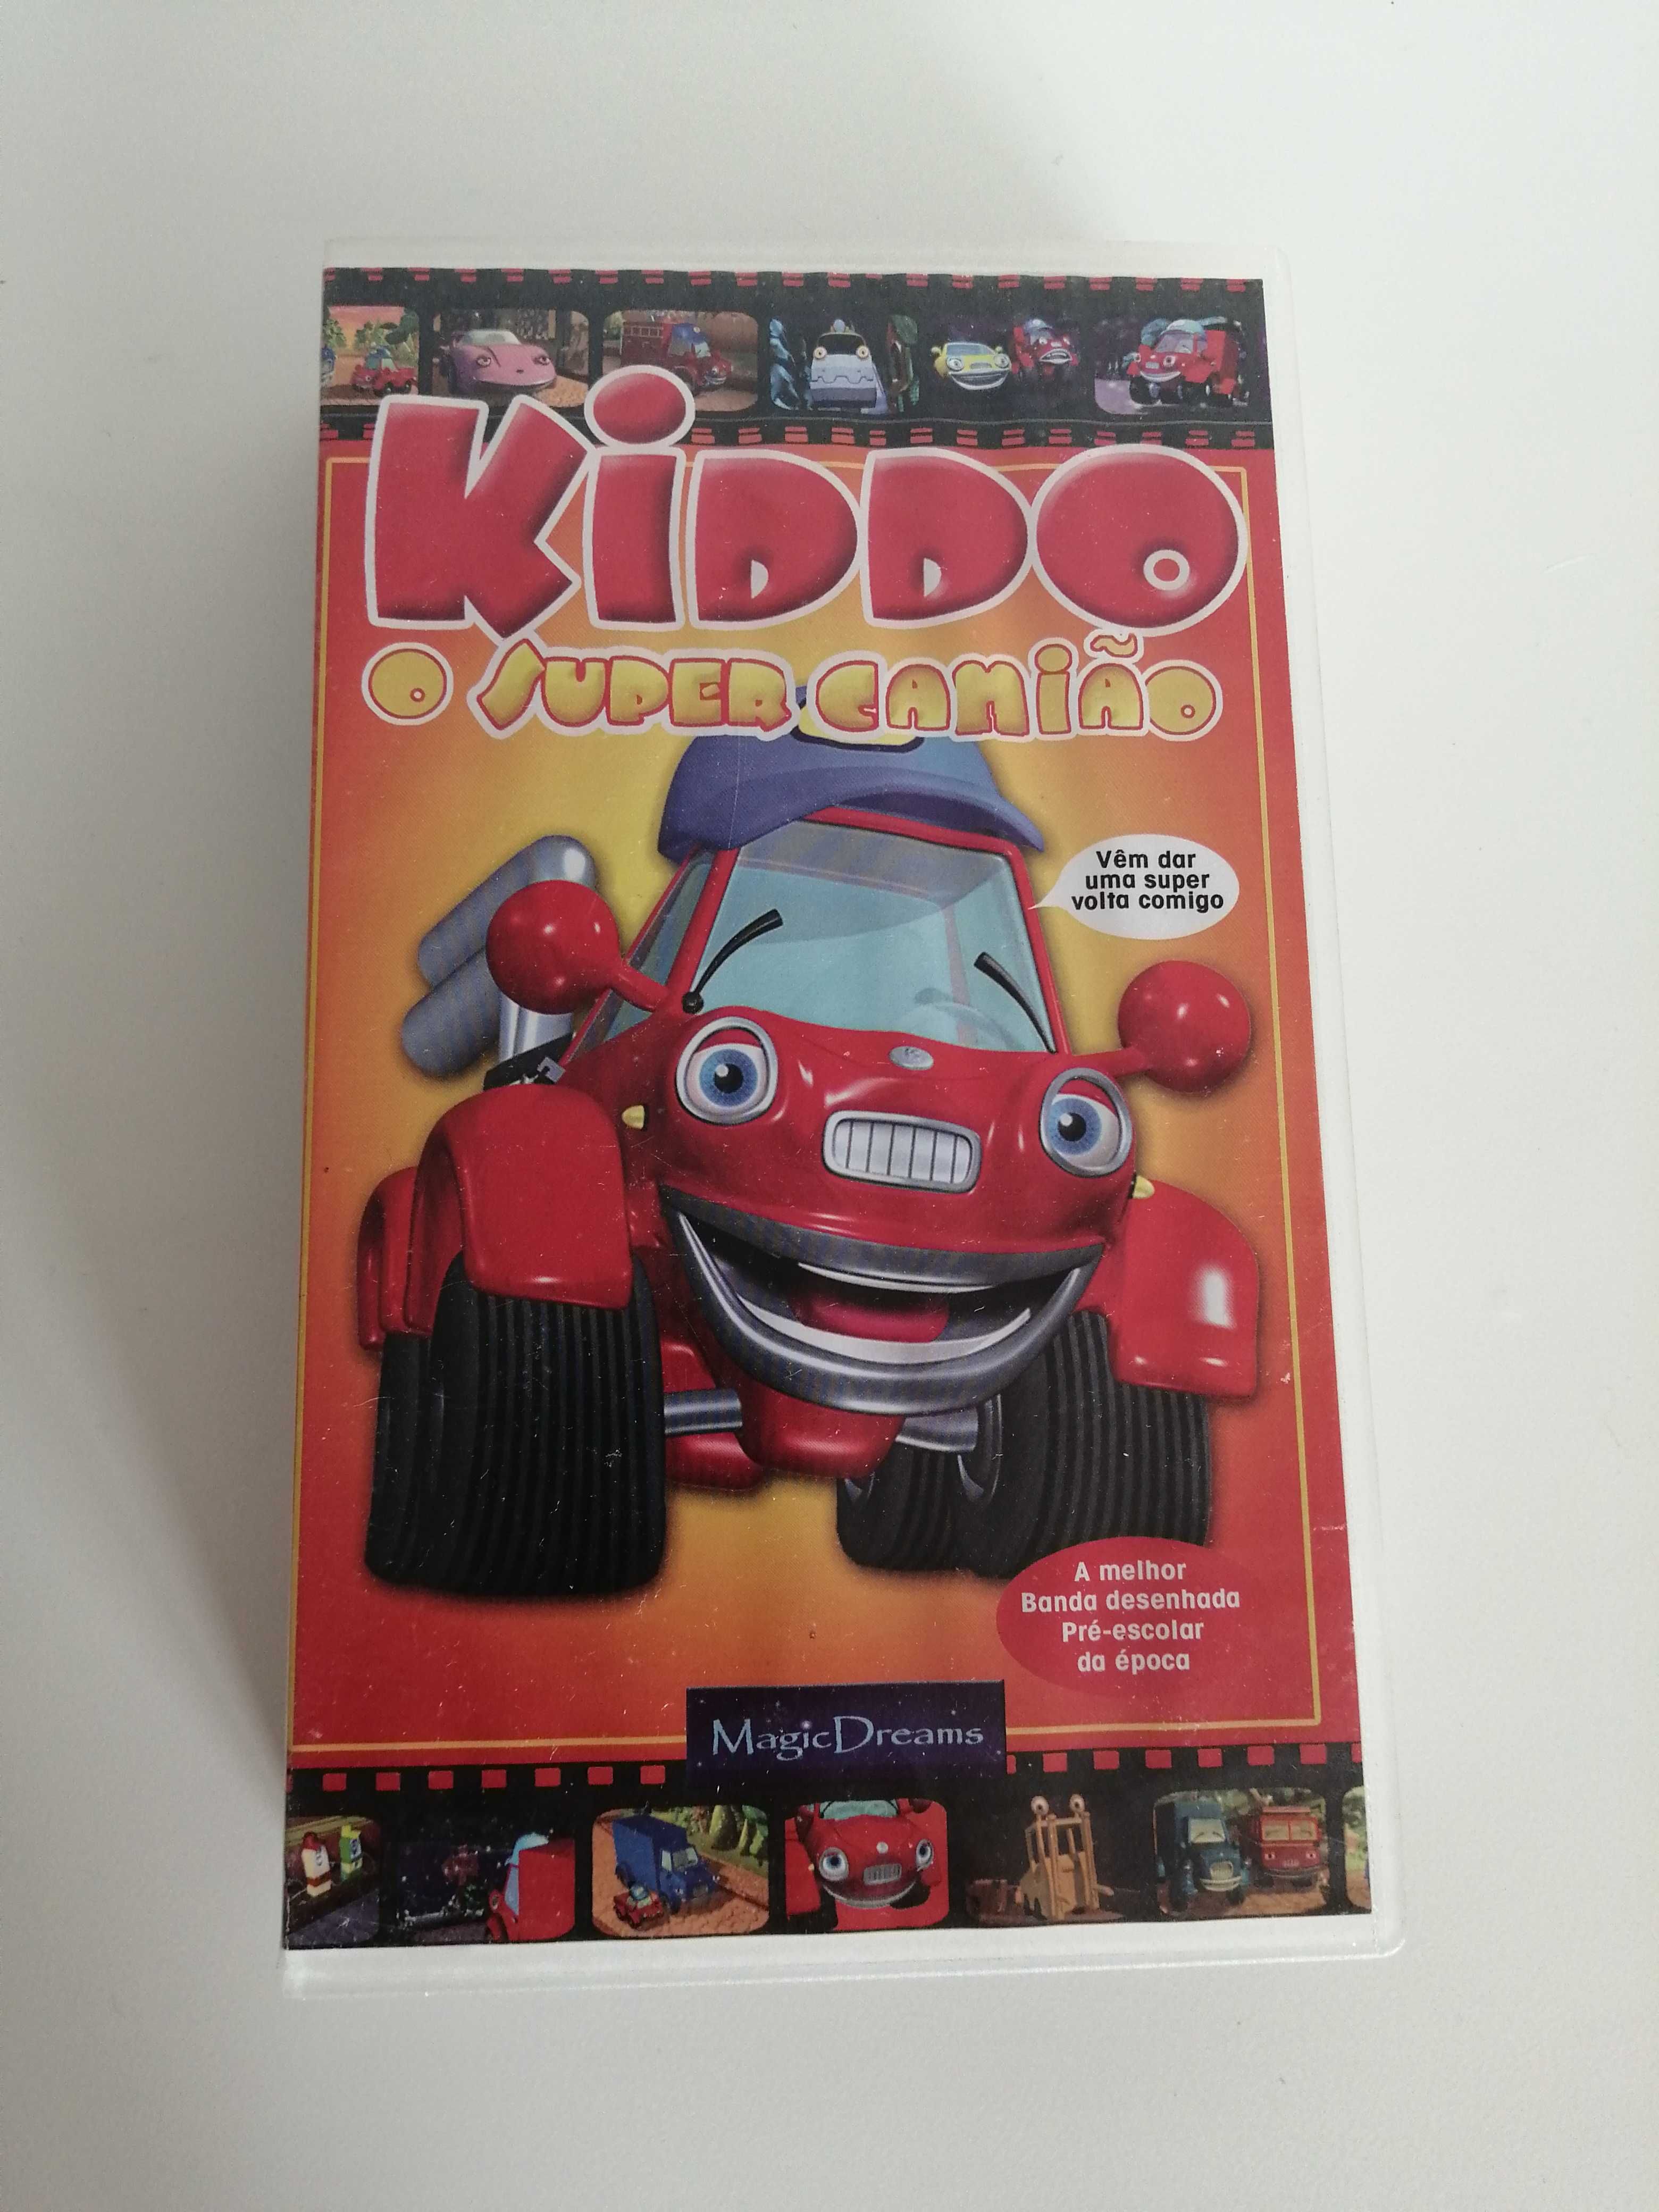 Kiddo O Super Camião [VHS]